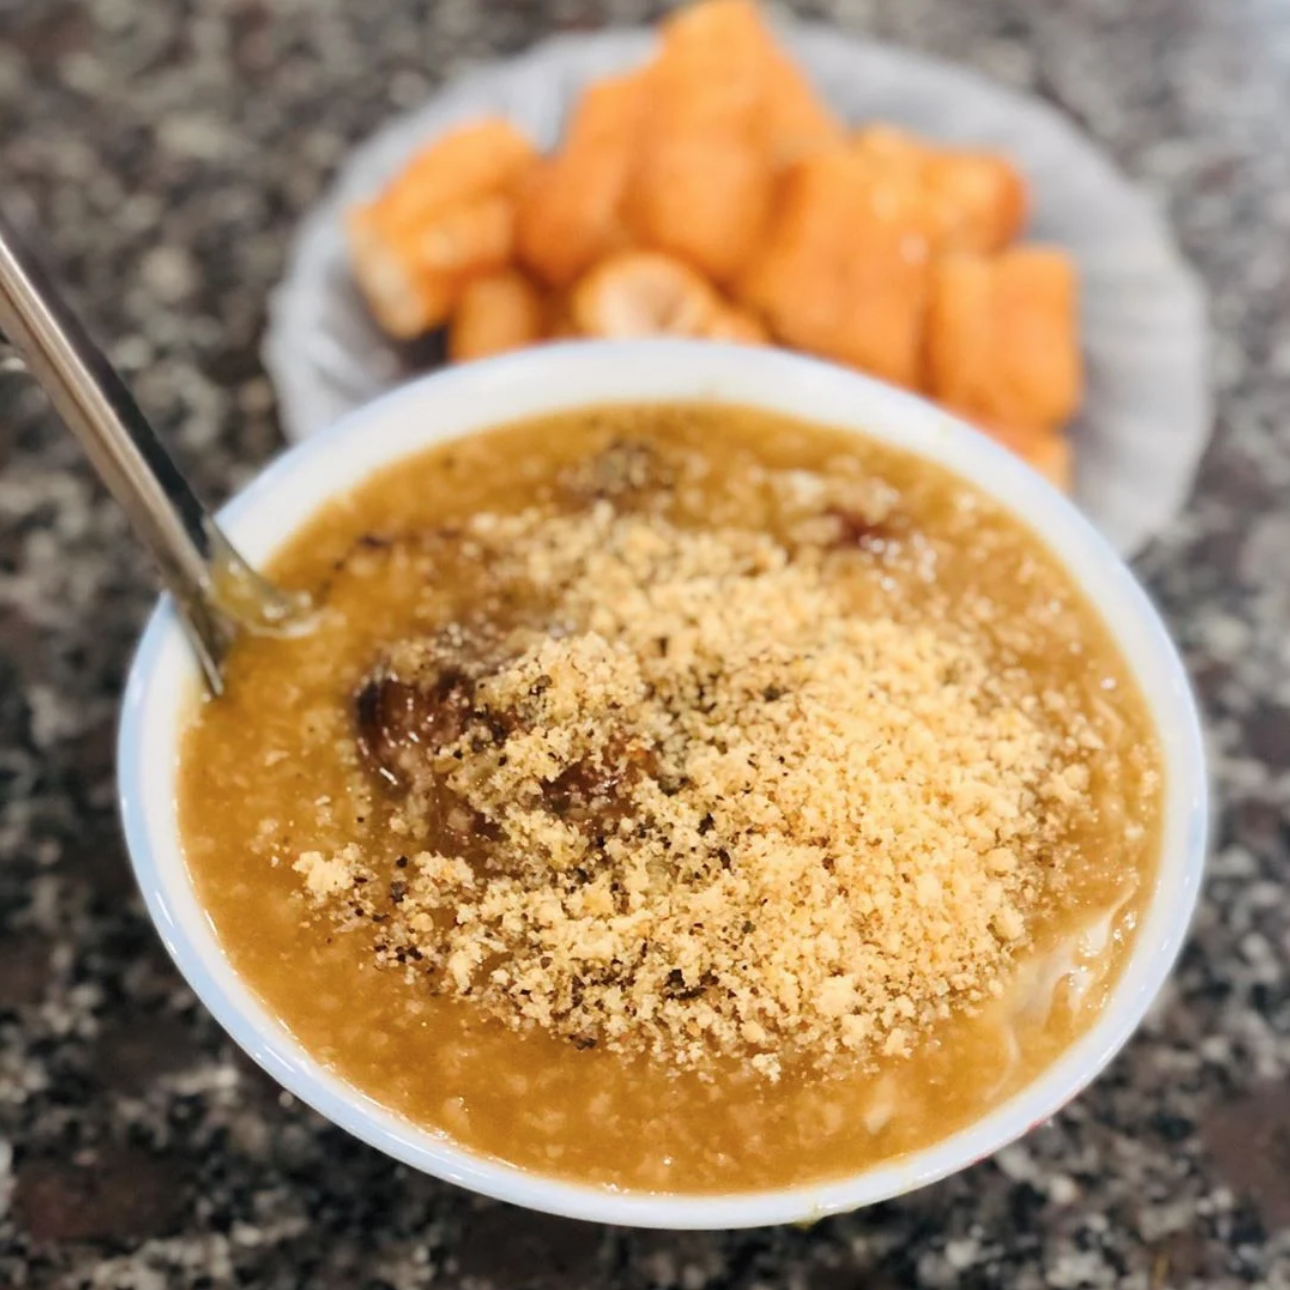 Cháo thái có cách chế biến độc đáo, là món ăn đặc sắc của Bắc Ninh.